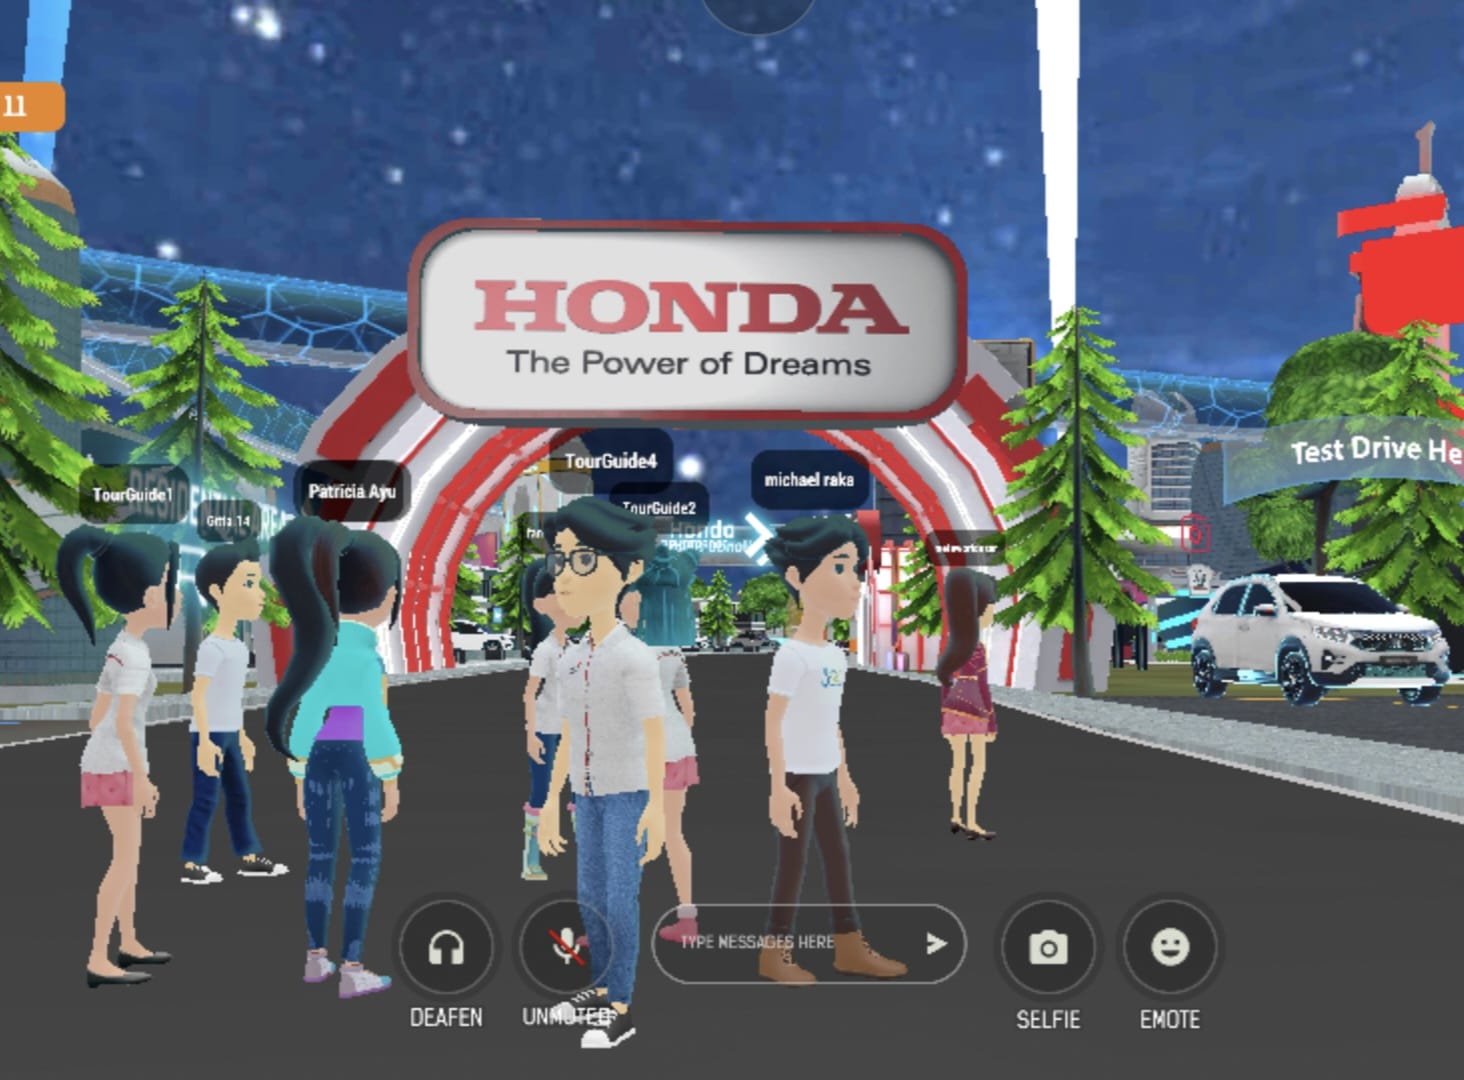 Kolaborasi Honda dan Telkom Hadirkan Dunia Virtual MetaWorld, Pengguna Bisa Saling Terhubung